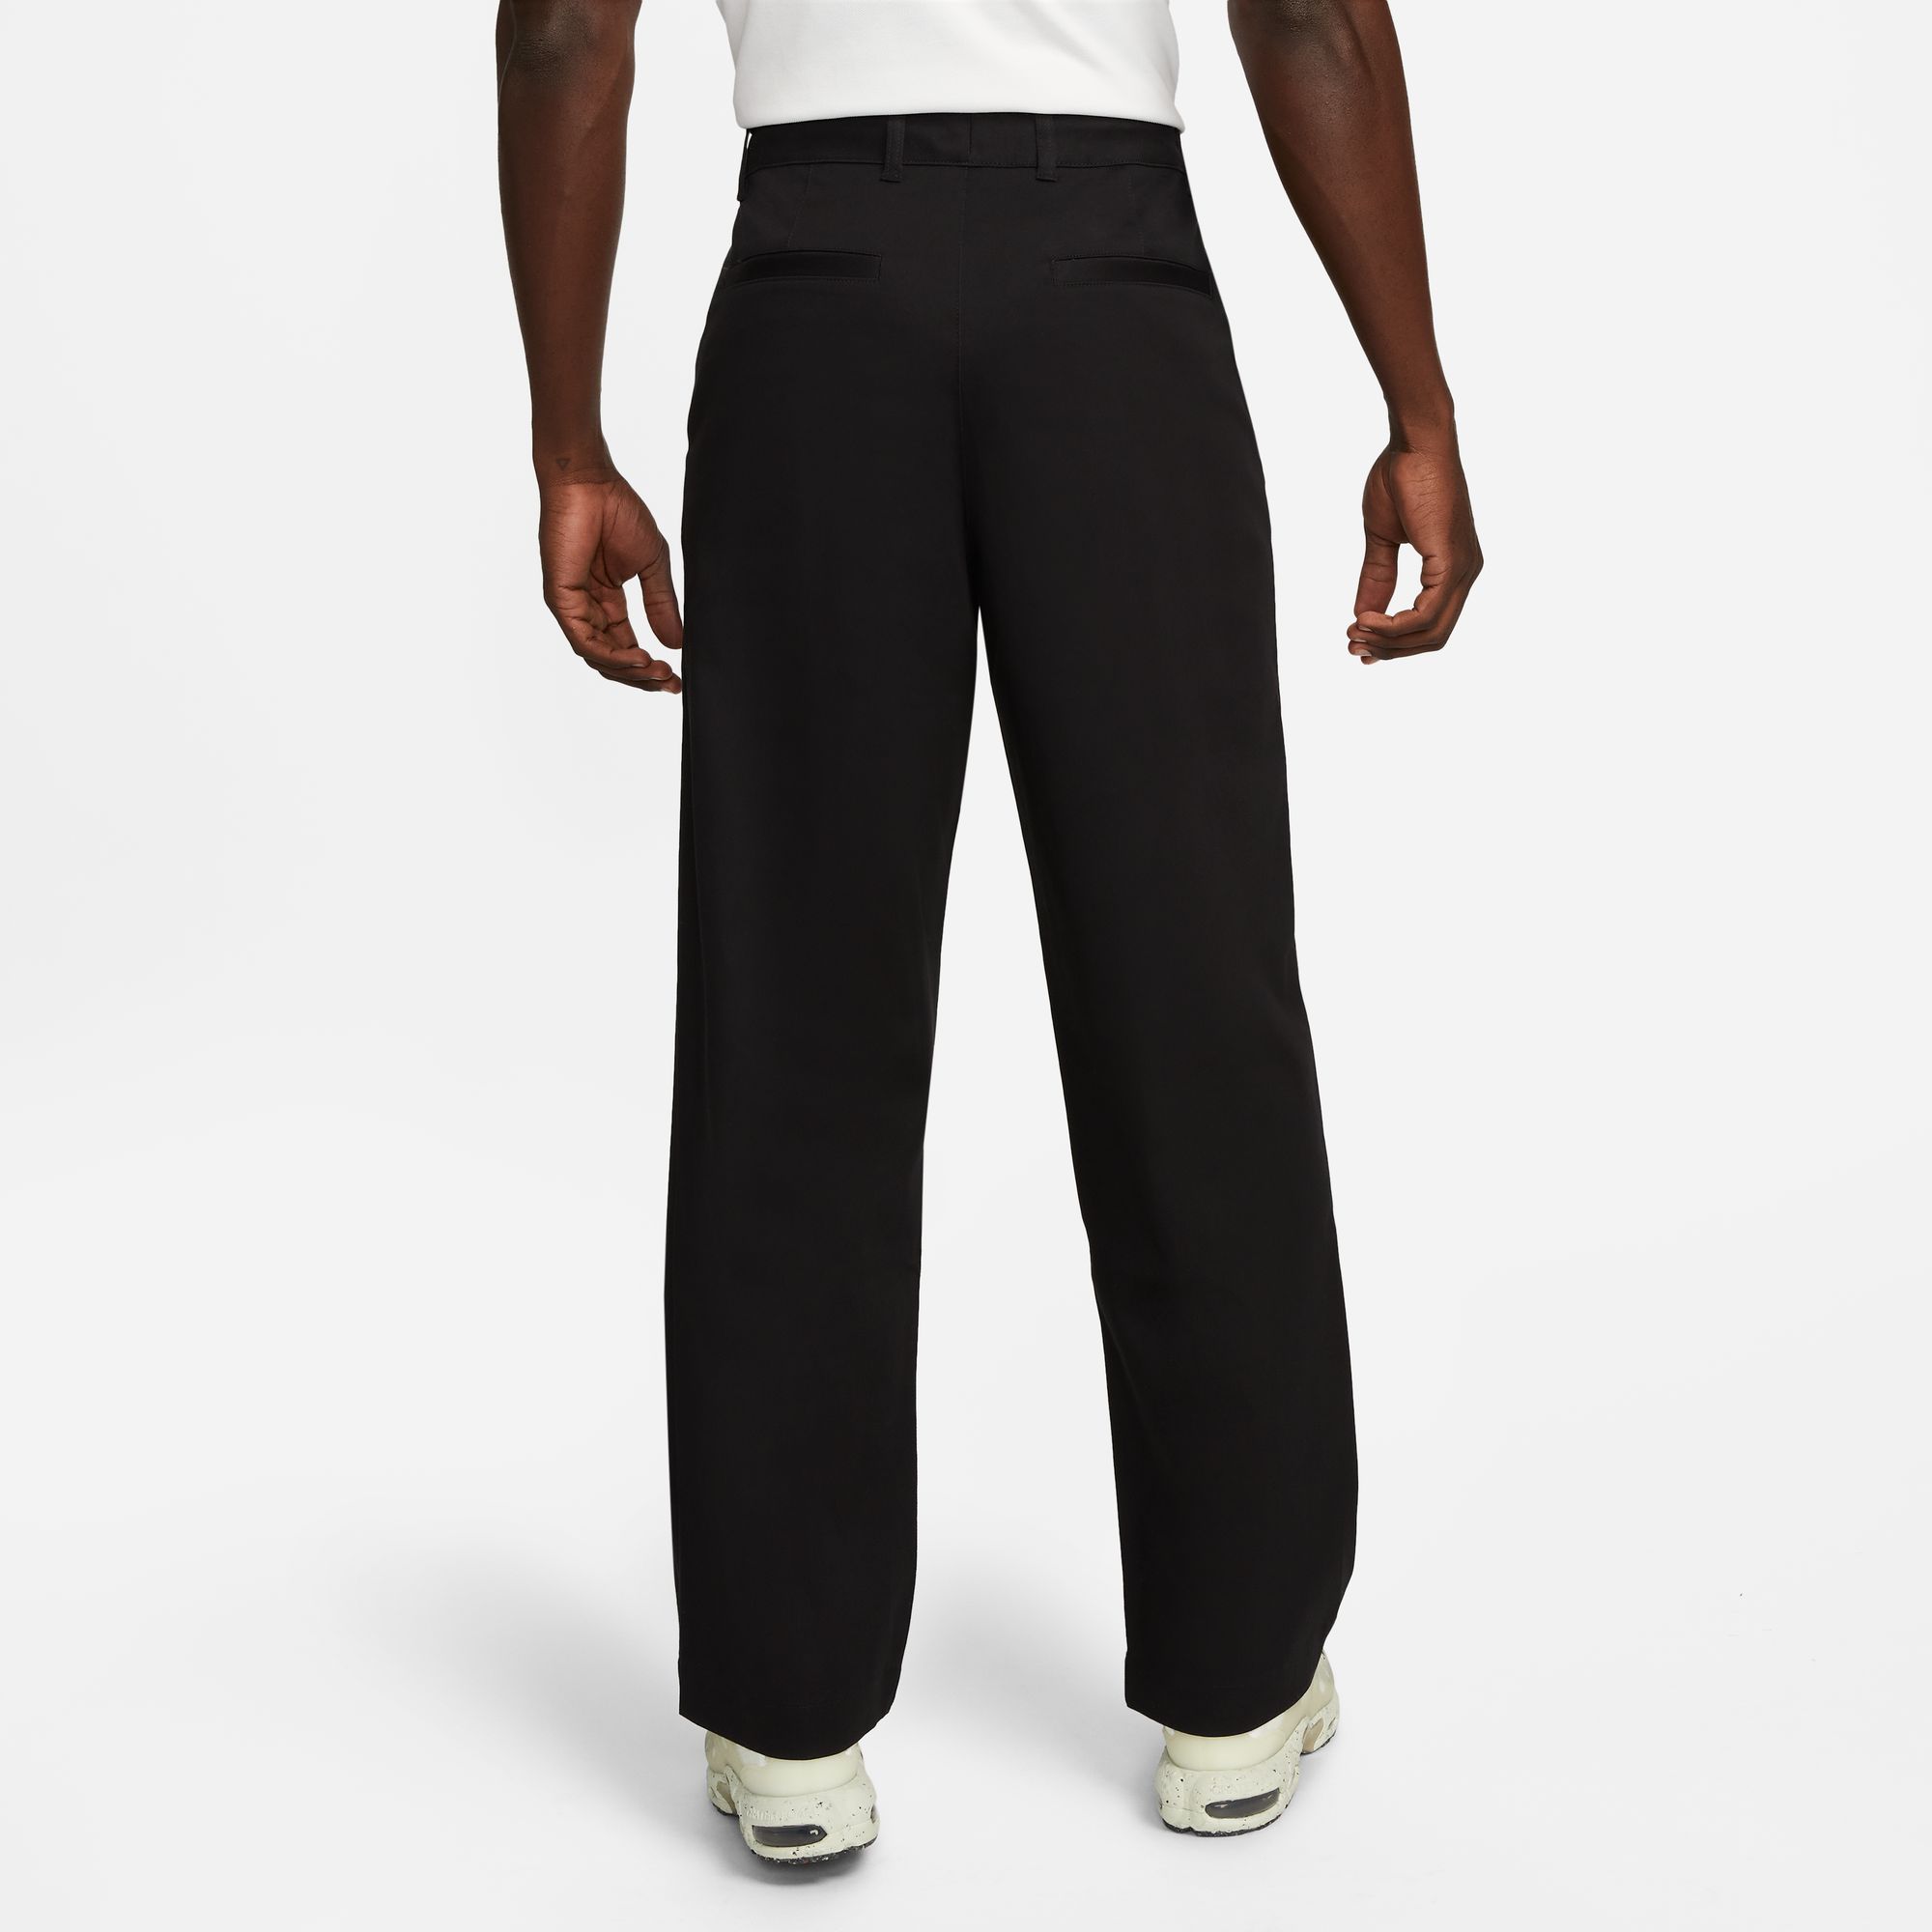 Nike SB Men's Unlined Cotton Chino Pants Black 02